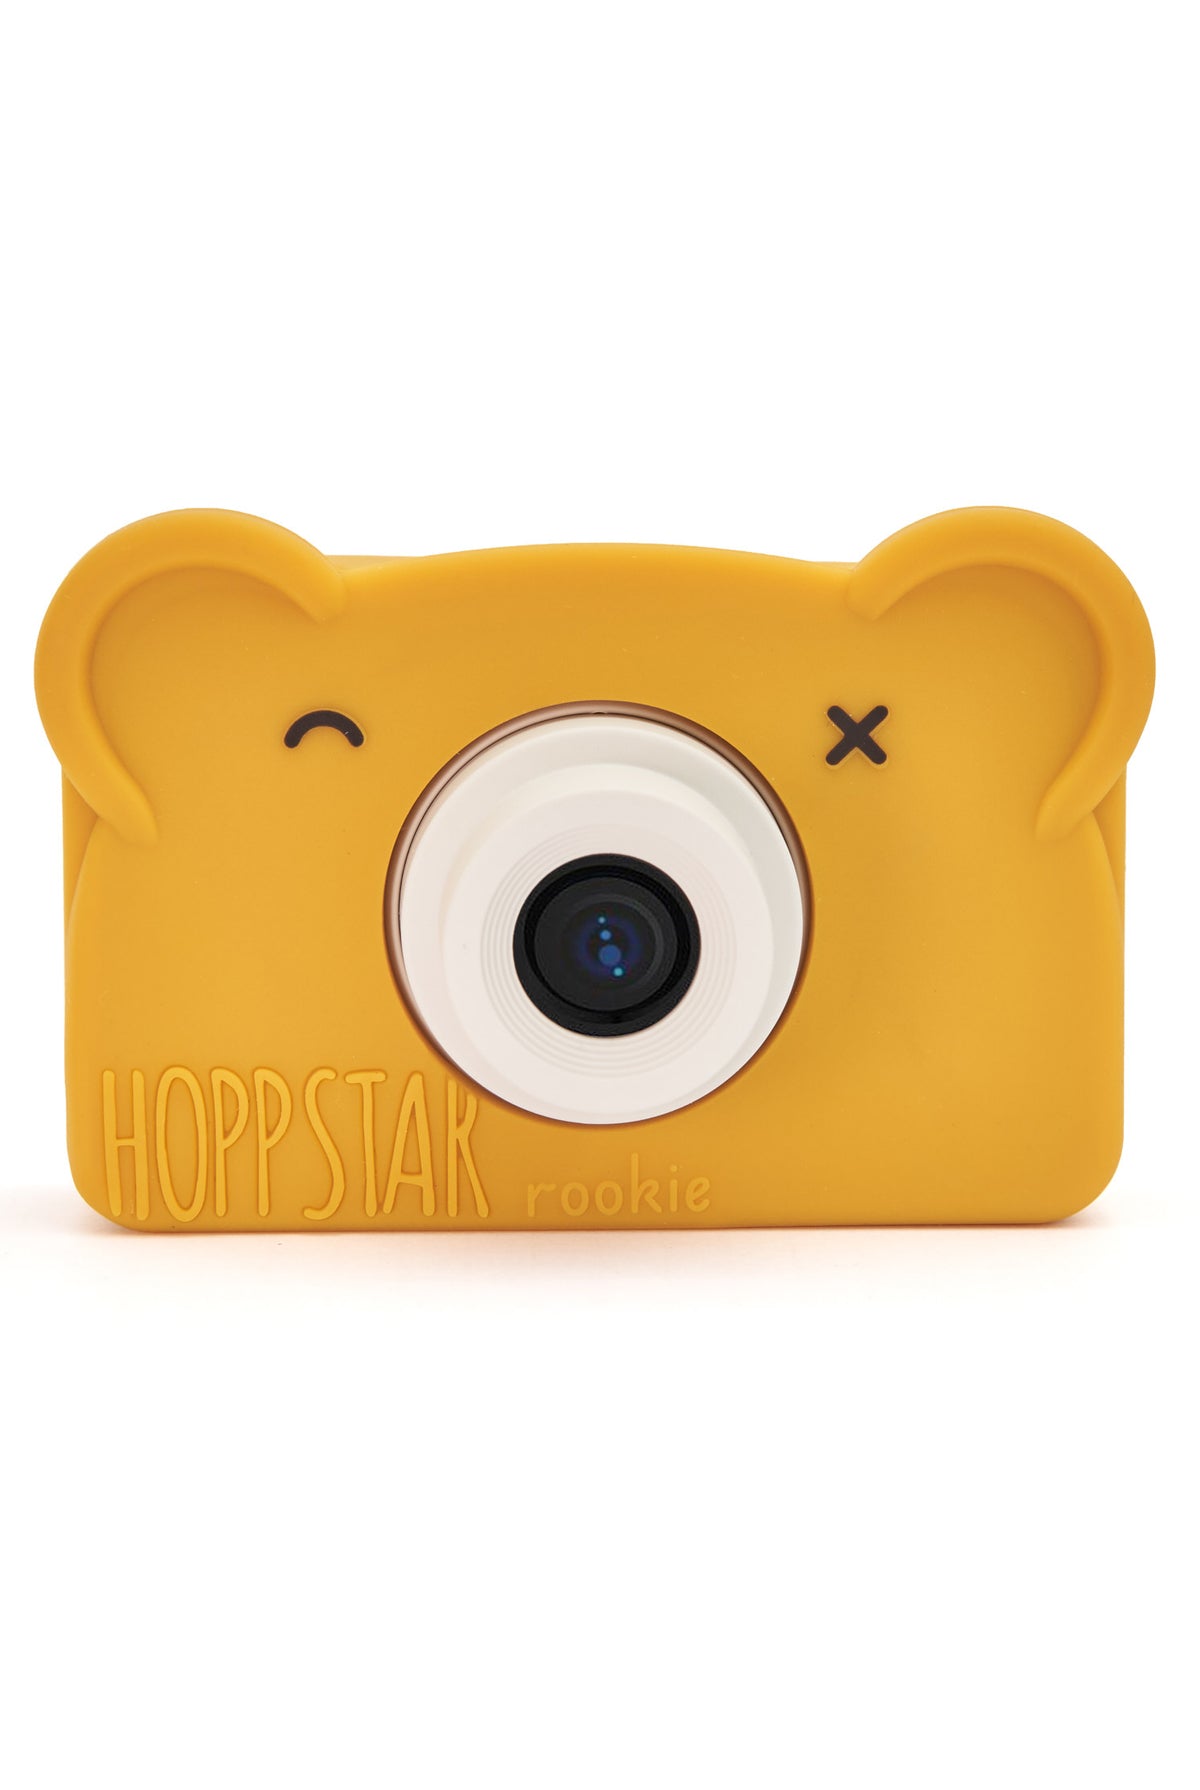 Hoppstar Rookie Honey Digital Camera